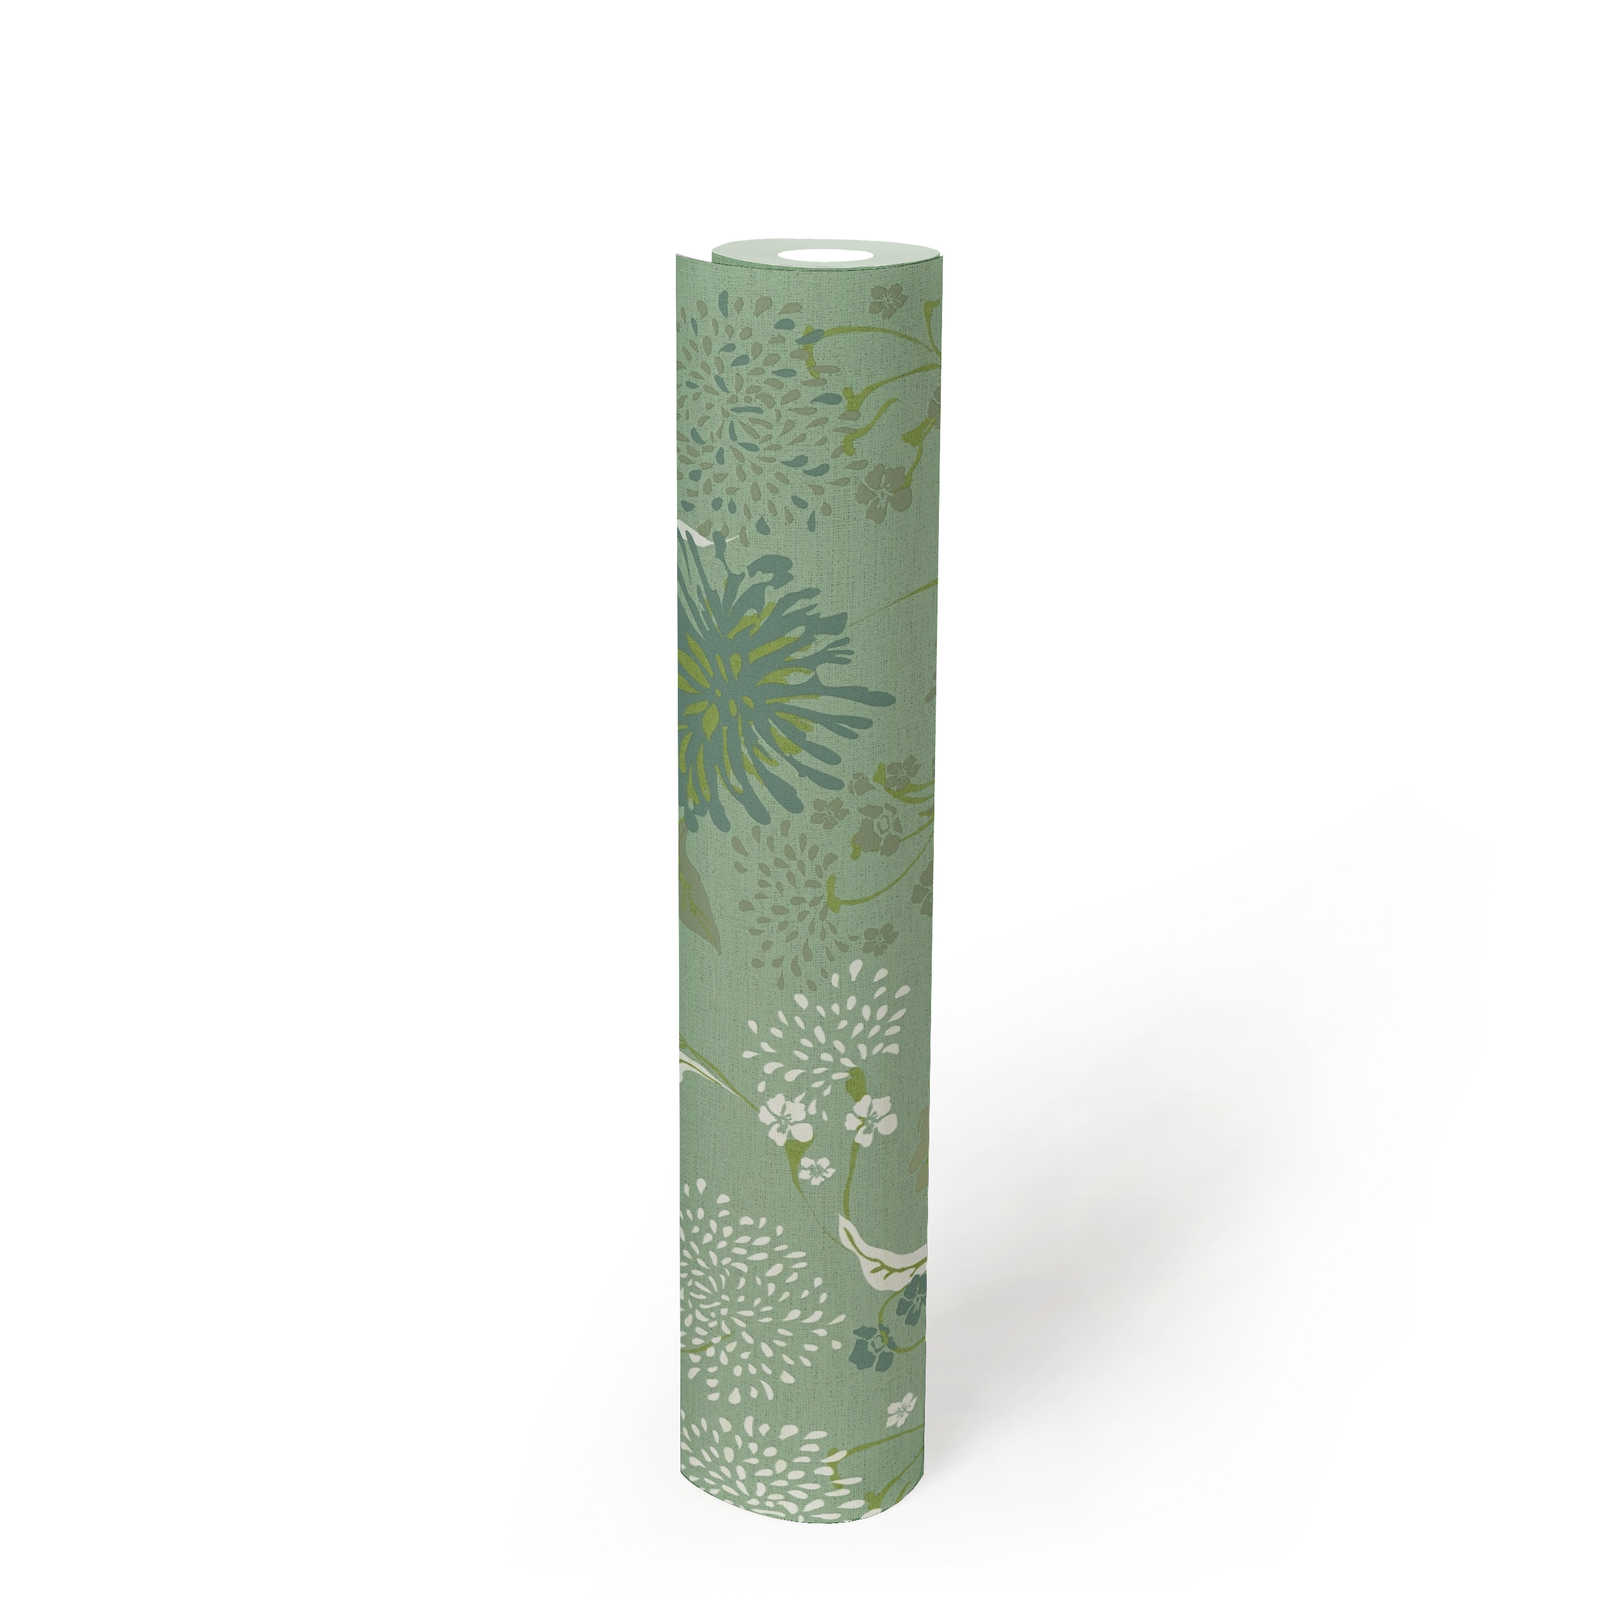             Papier peint intissé avec motif floral de pissenlits - vert, blanc
        